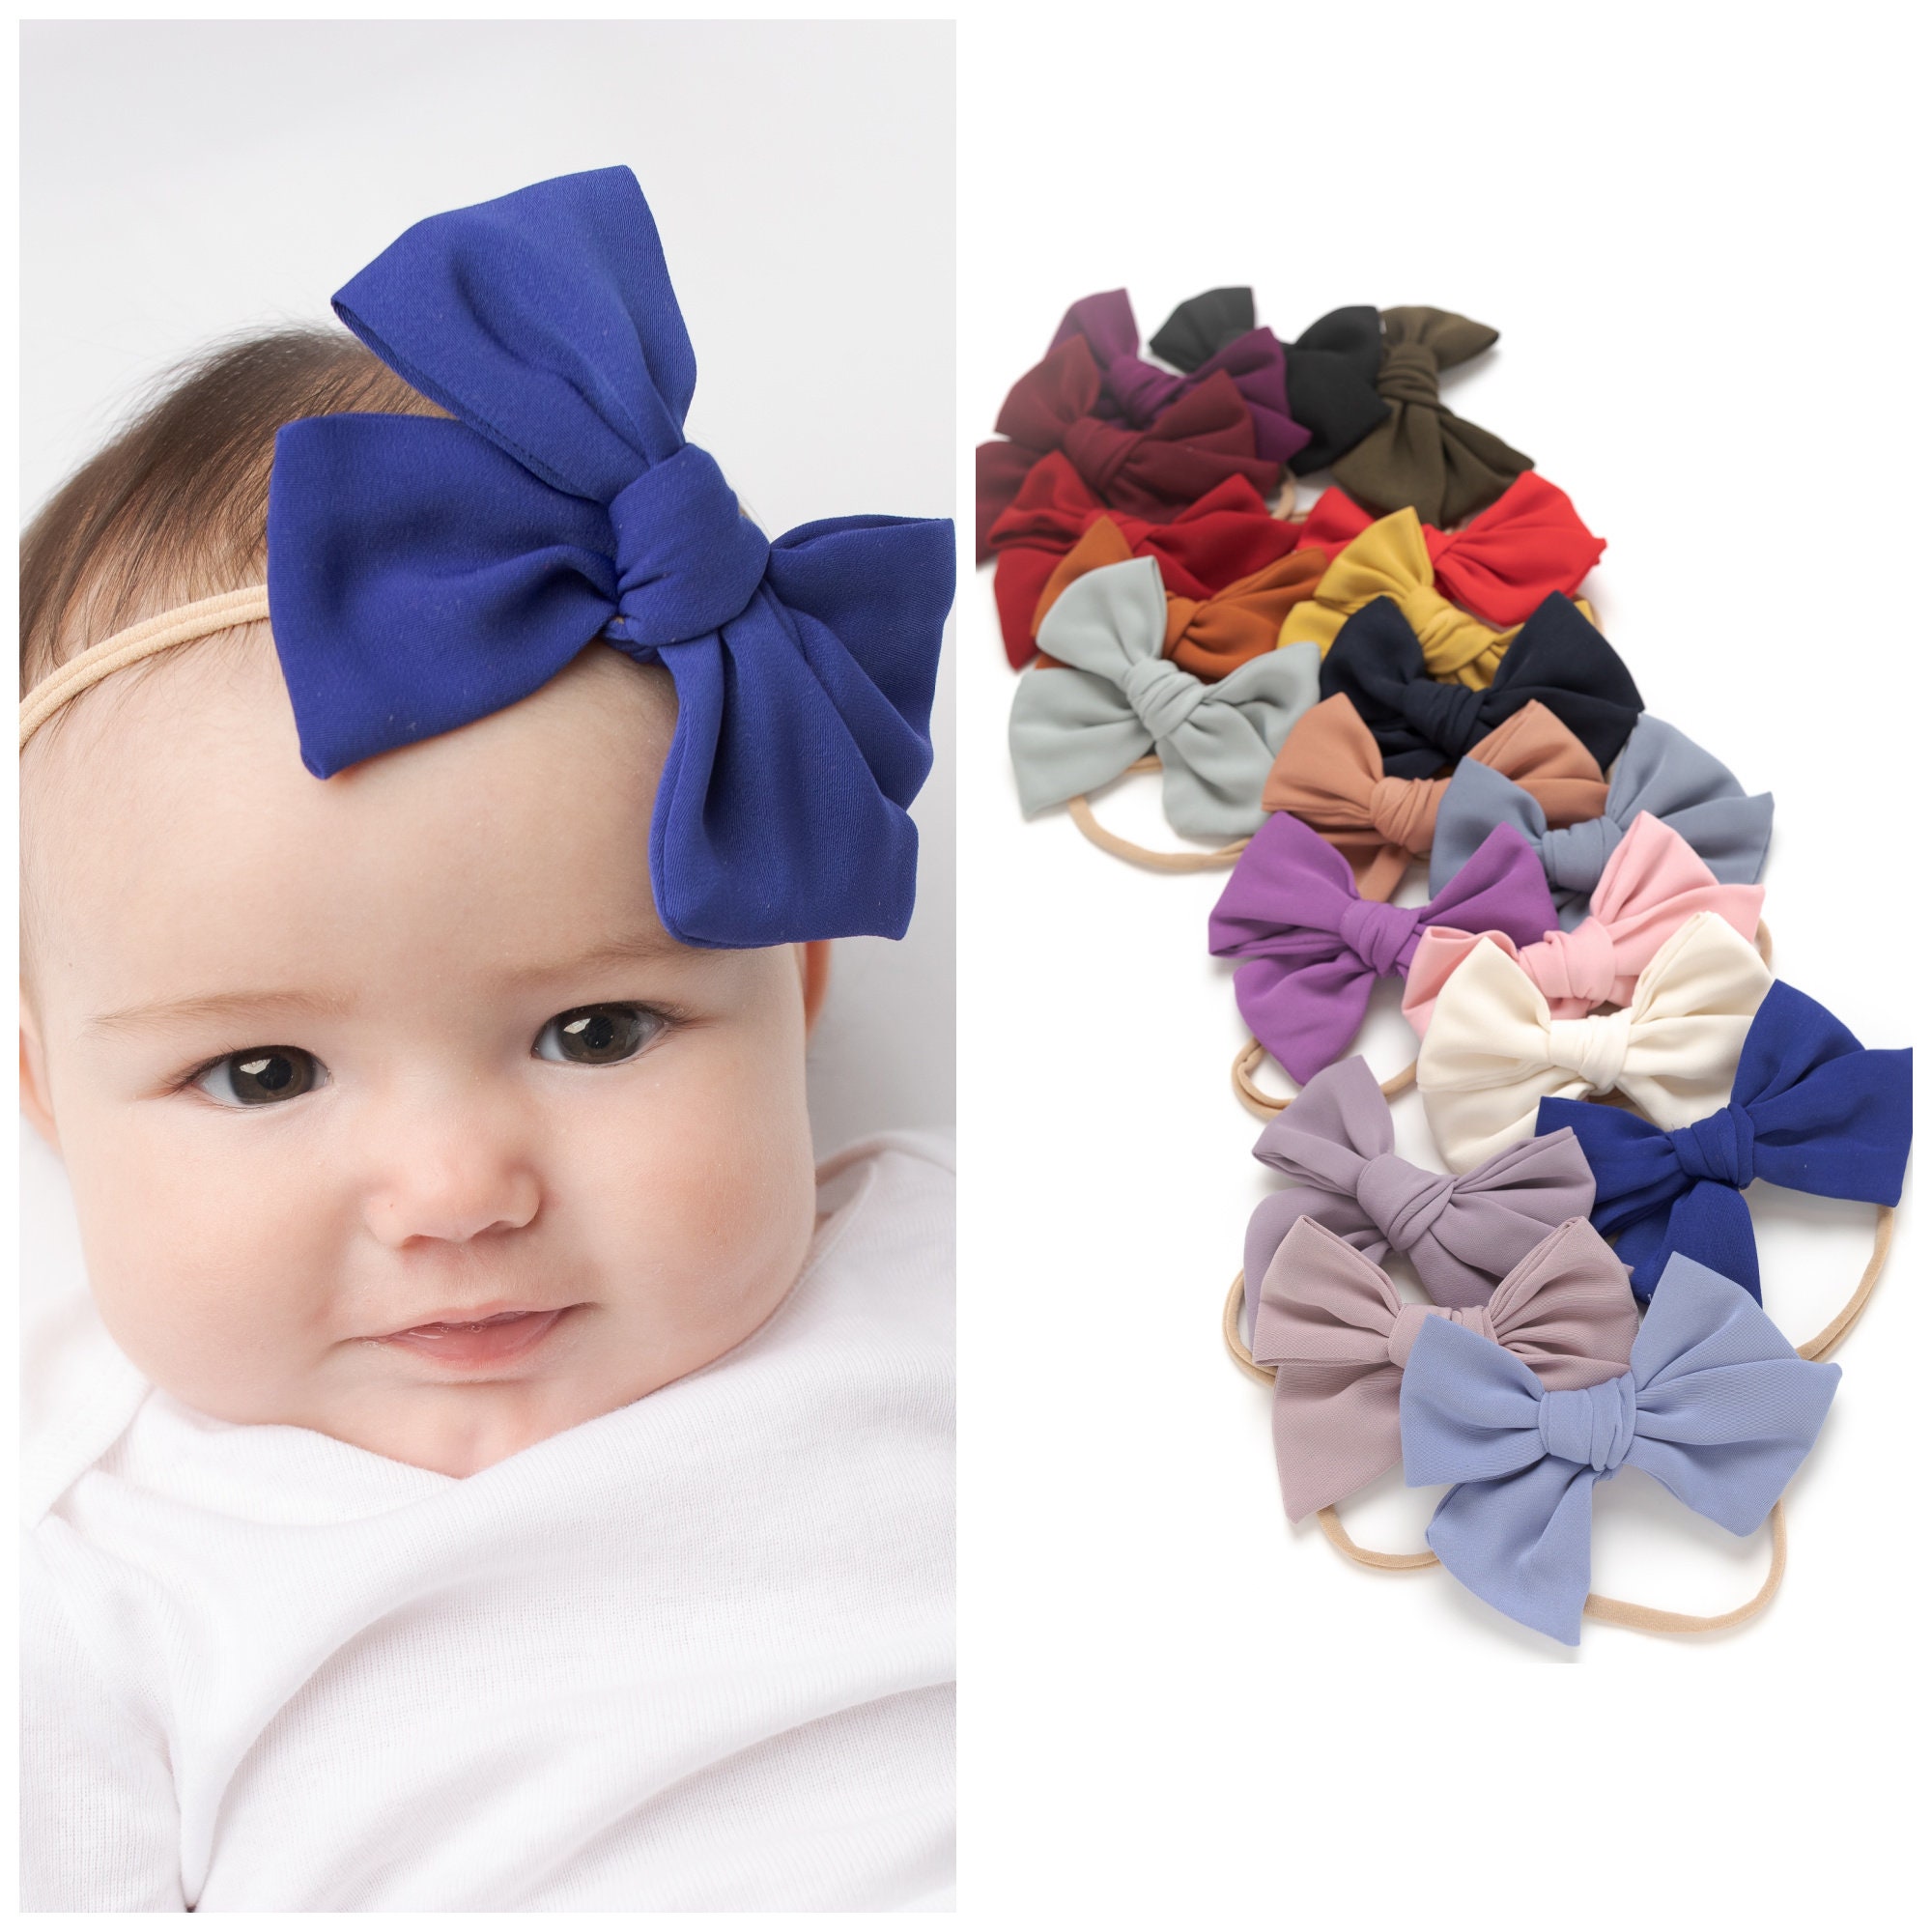 Bandeau bébé noeud - Accessoire cheveux fille - 40 coloris - Maison ème